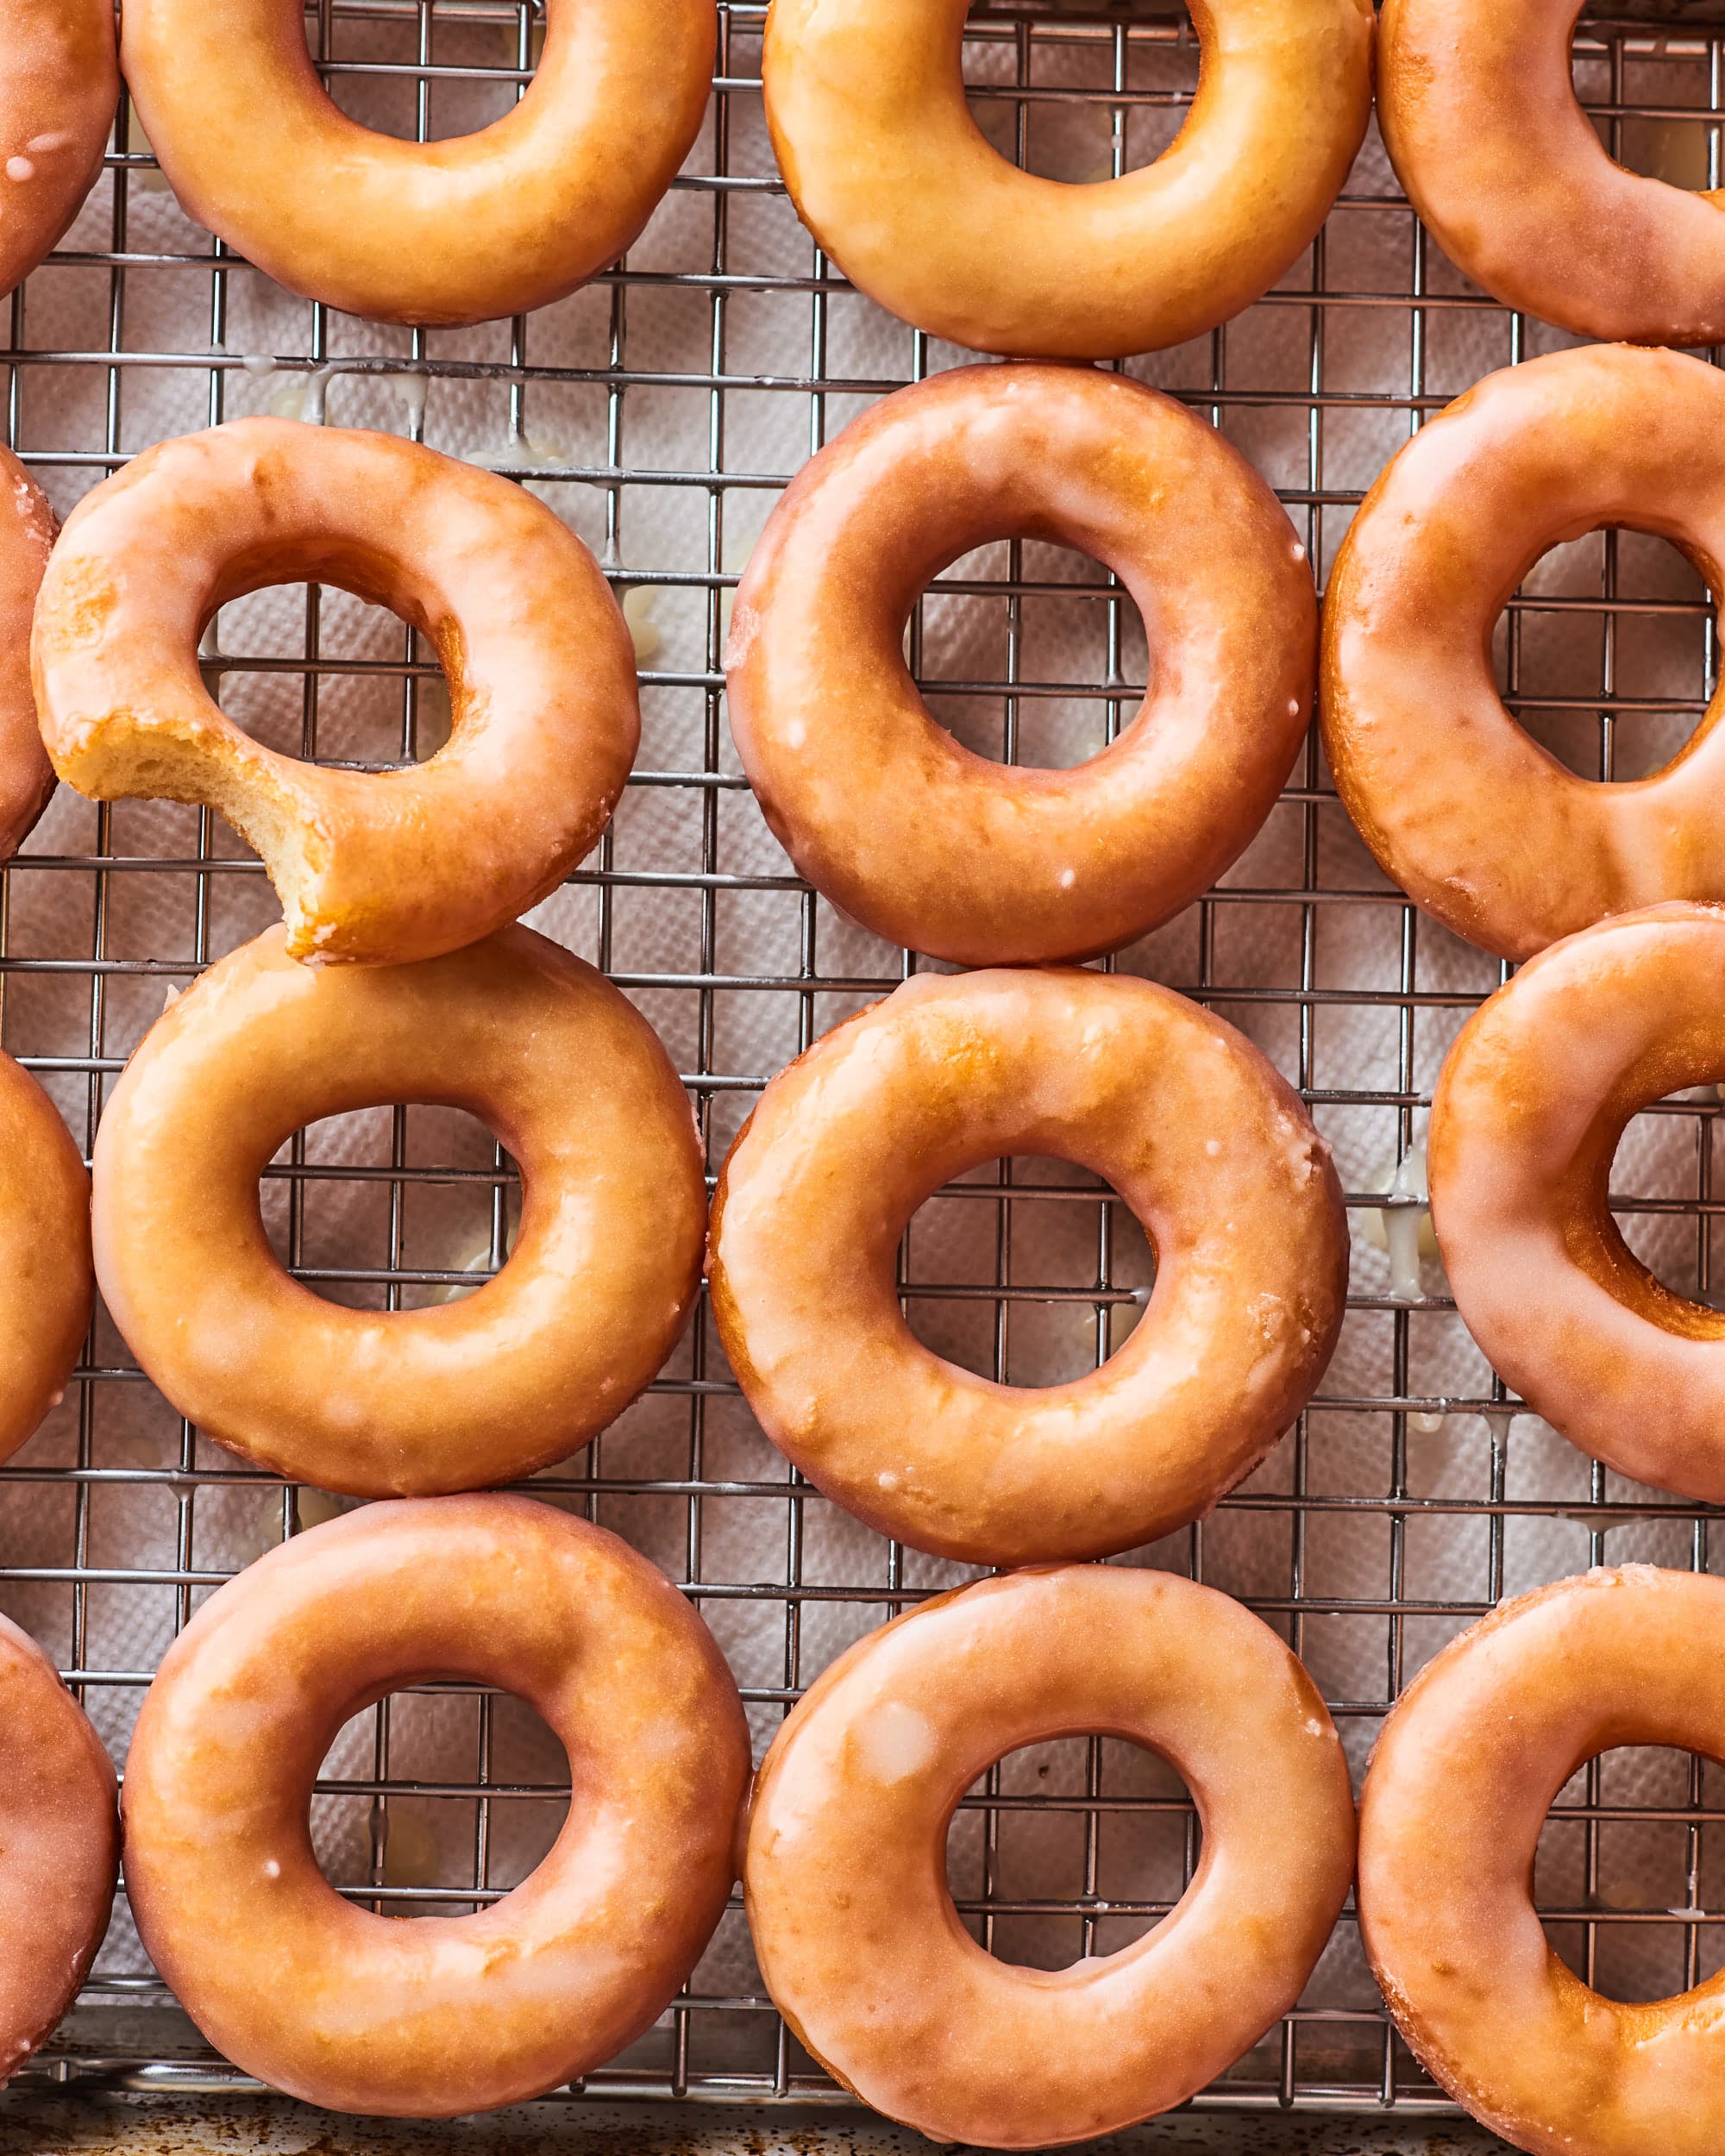 Homemade Donuts: Baked Better than Fried? | Bigger Bolder Baking